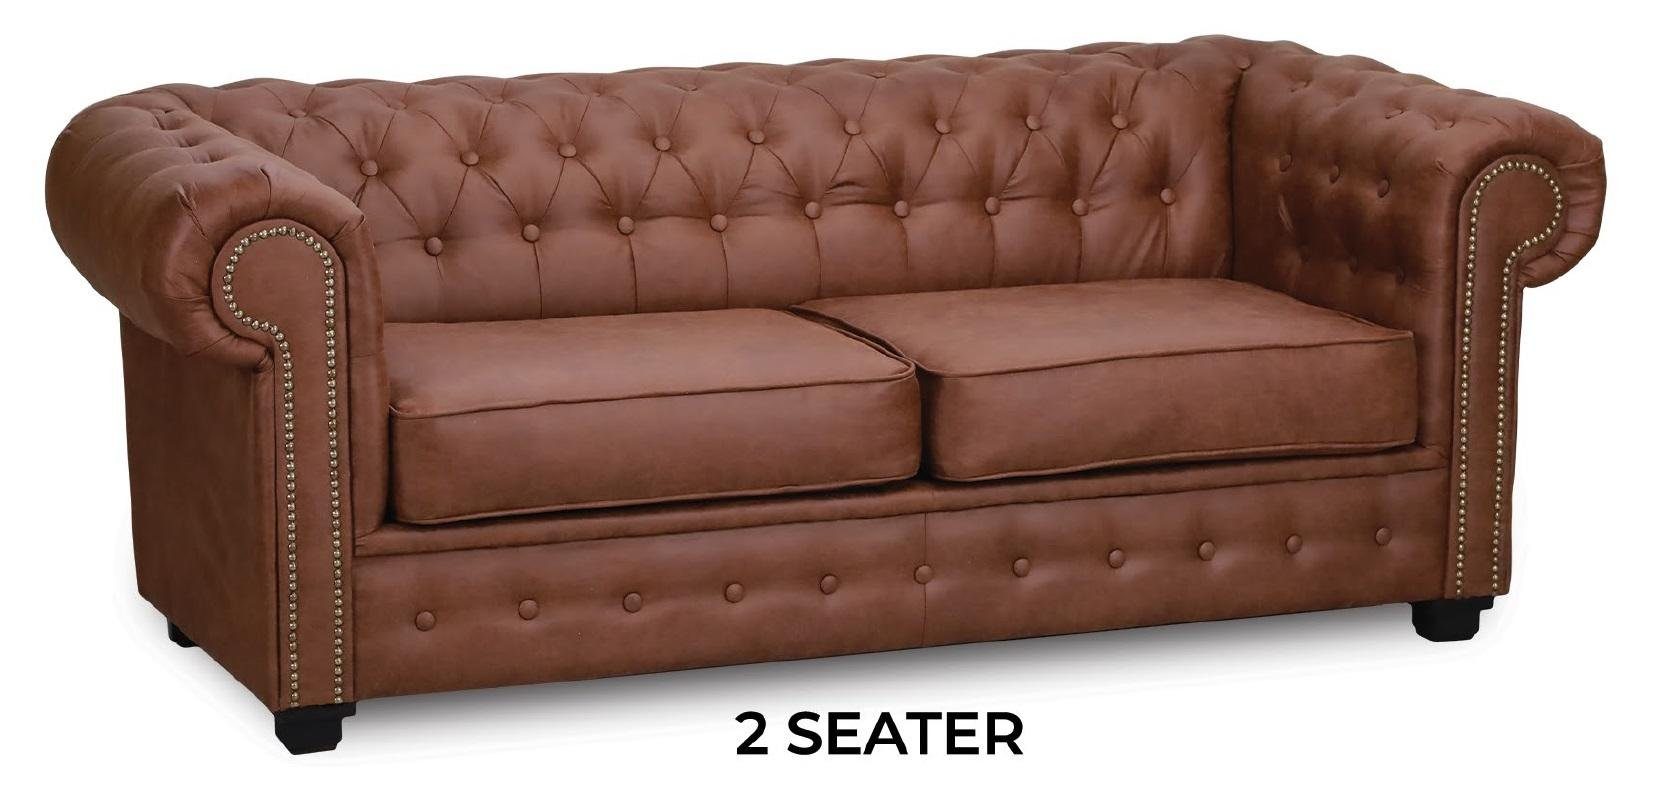 JVmoebel Sofa Sofas, Europe Chesterfield Couchen Braune Couch in Zweisitzer Made Möbel Polster